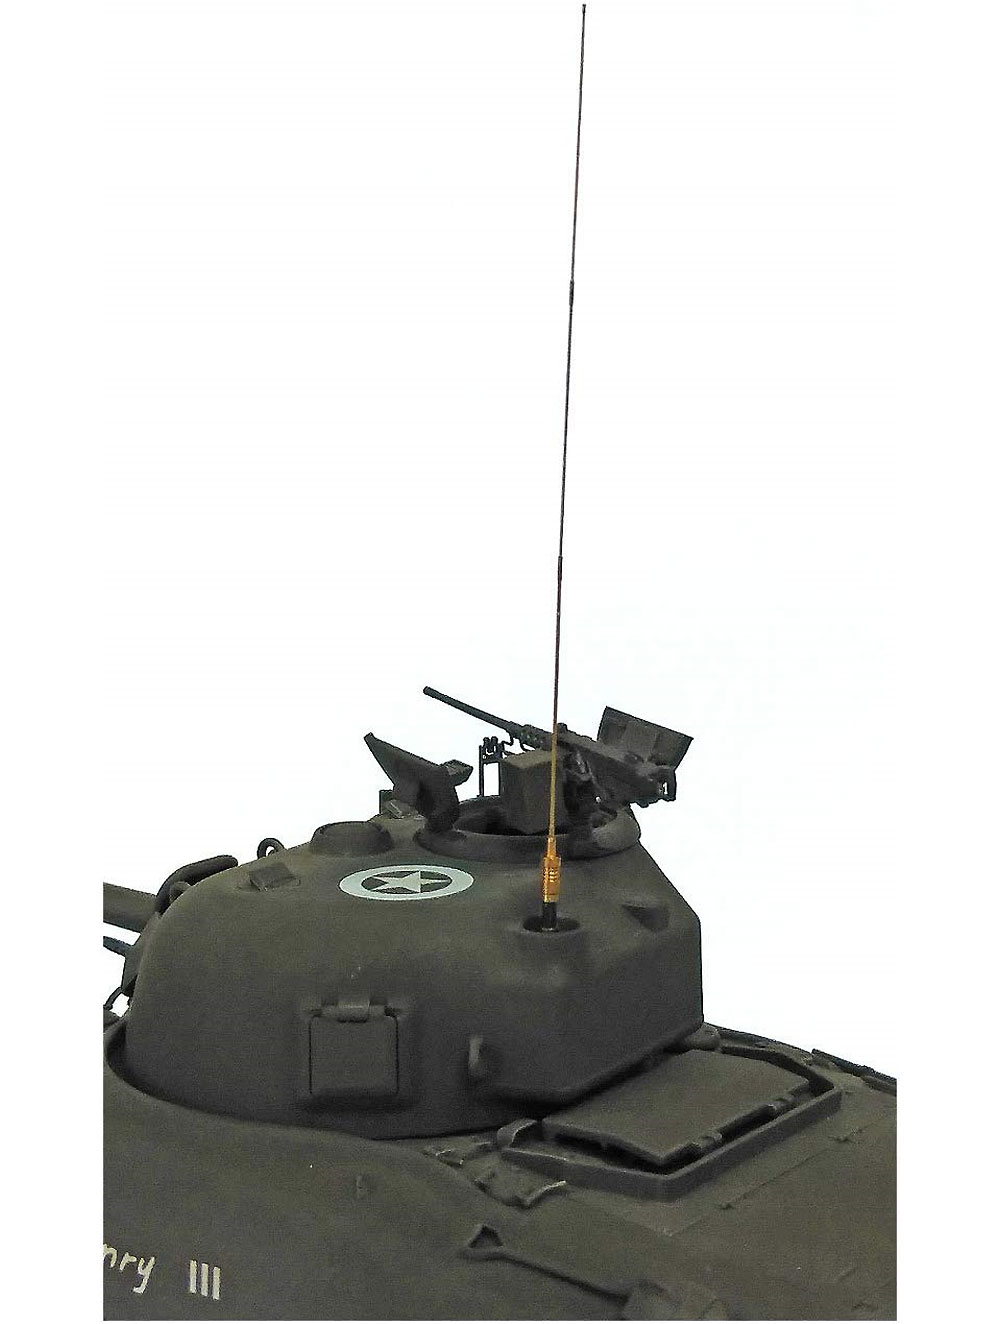 アメリカ中戦車 M4A1 シャーマン 中期型 アドラーズネスト社製 WW2 アメリカ軍アンテナつき アスカモデル プラモデル